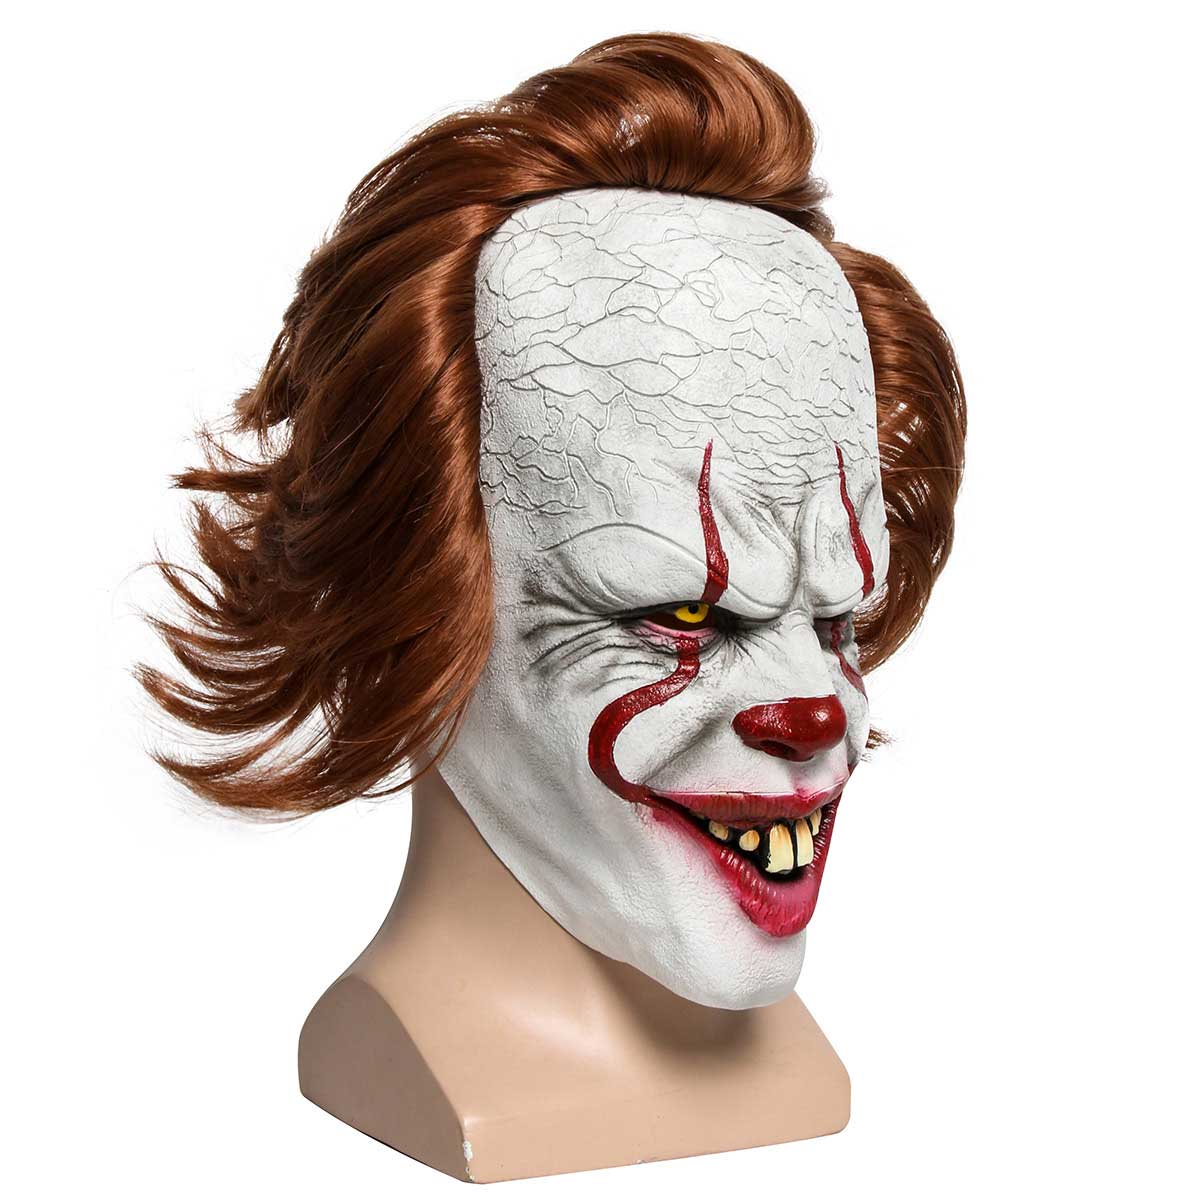 Joker Pennywise Full Face Halloween Mask